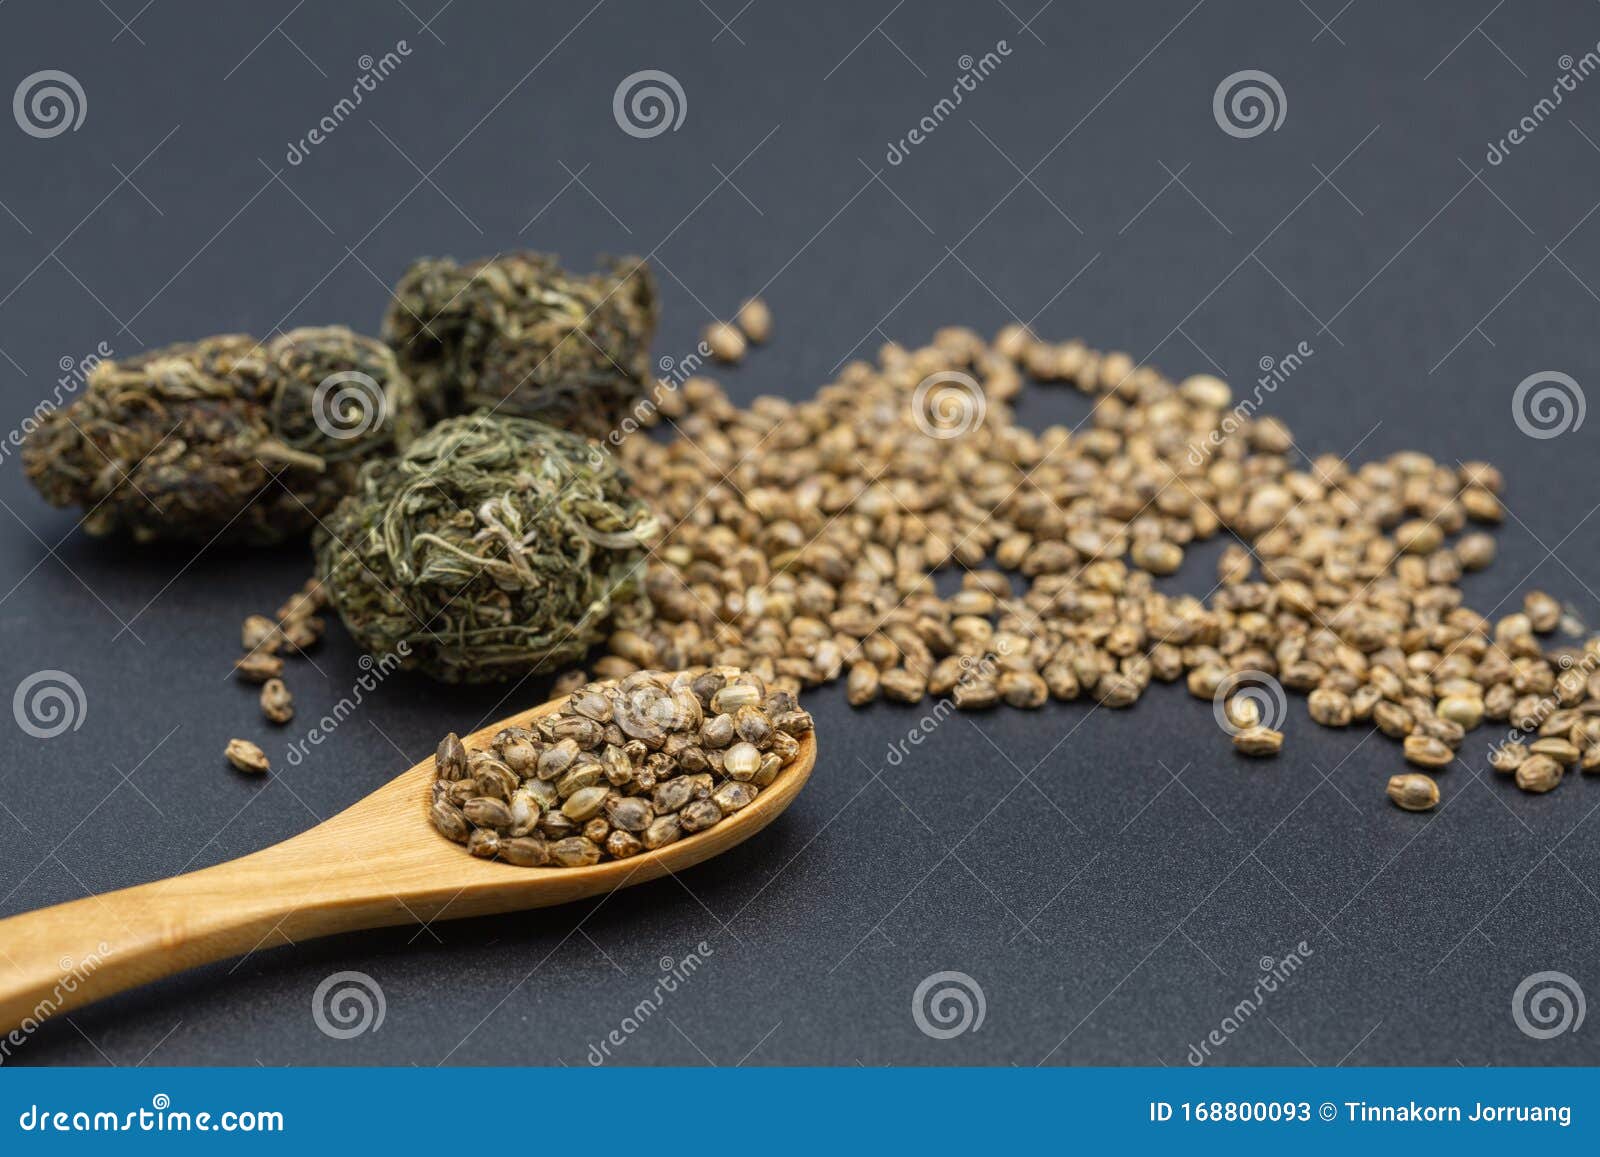 наркотики из семян конопли